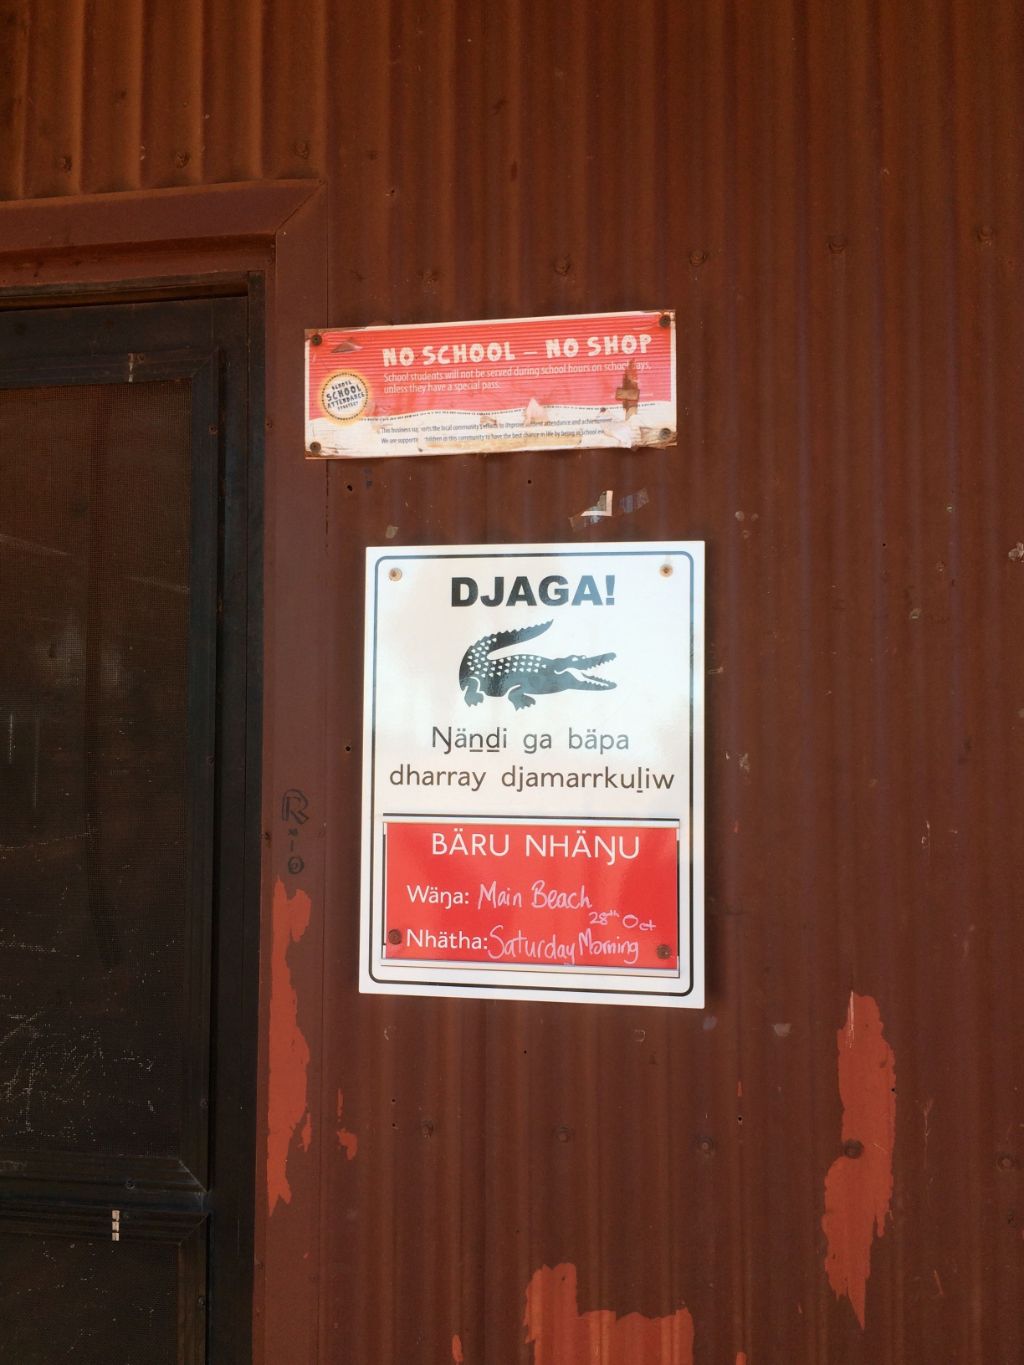 Auf dem Bild ist ein Teil einer Wellblechhütte zu sehen. Neben dem Eingang hängt ein Plakat, das vor Krokodilen warnt.